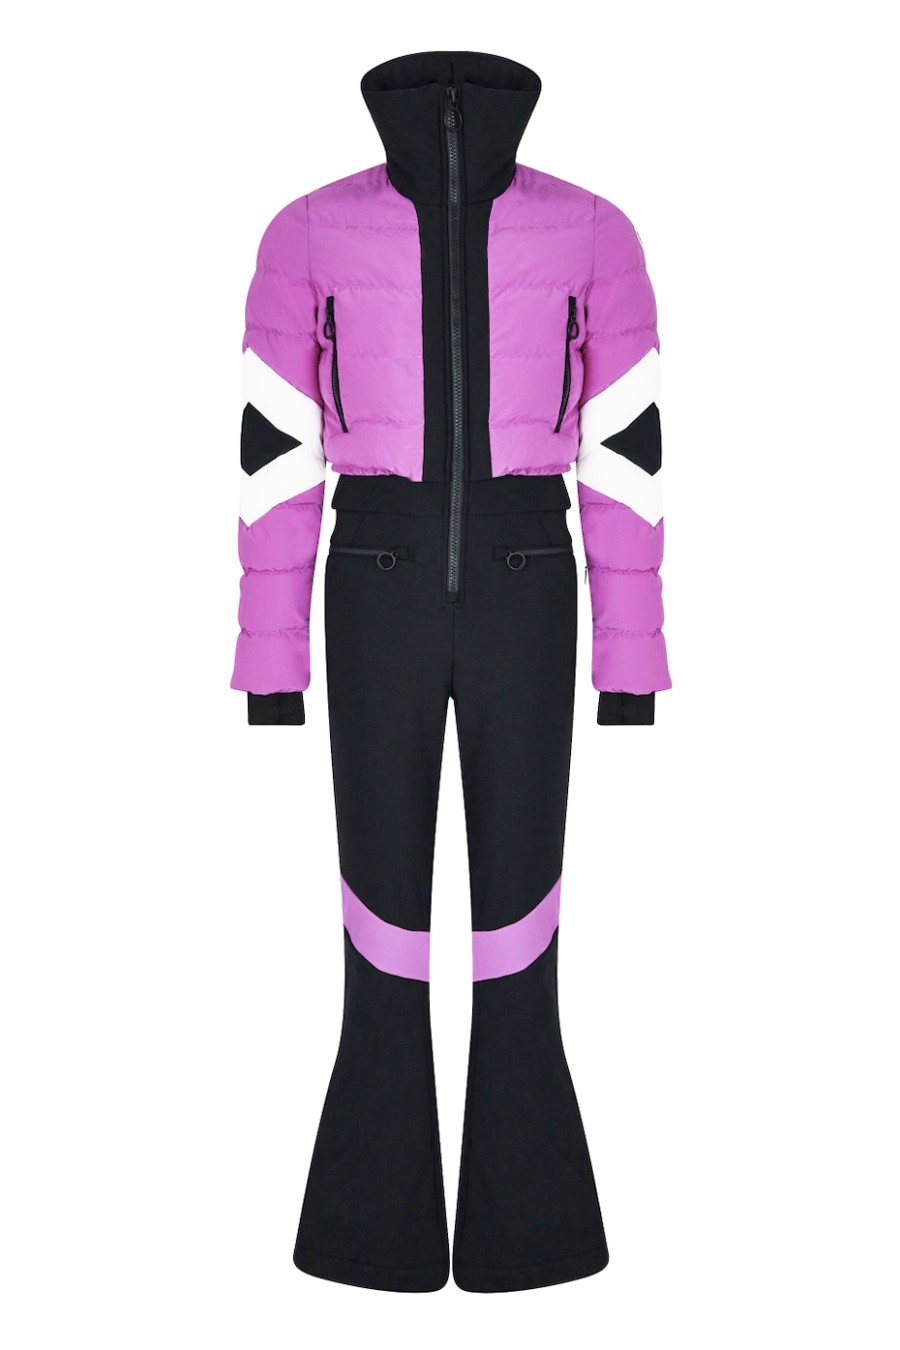 Image 1 of Fusalp clarisse ski suit